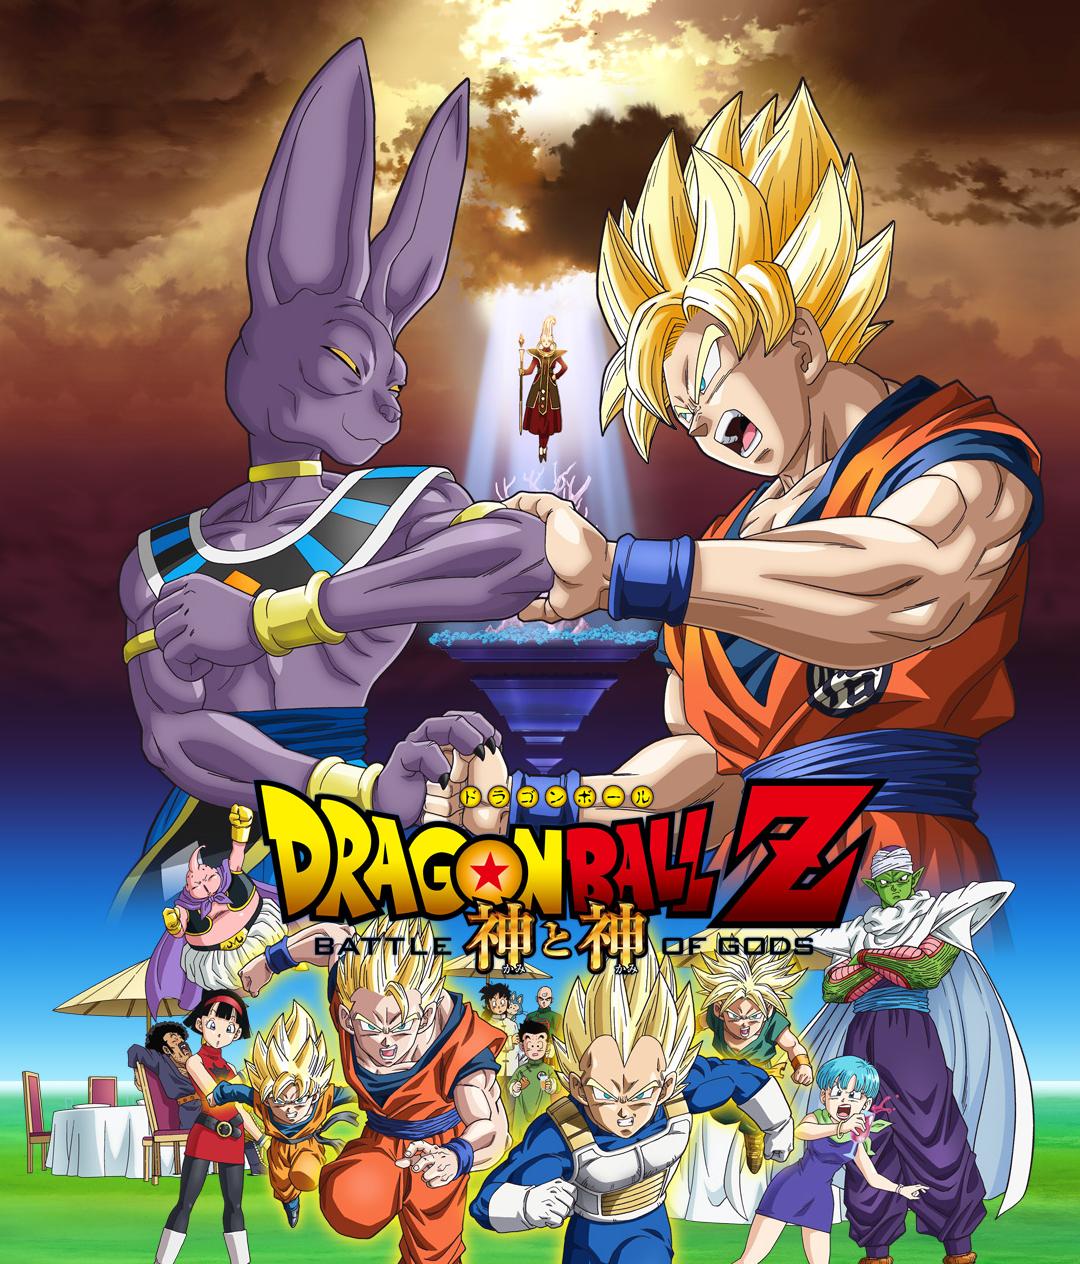 aningunsitioperoquesealejos: Dragon Ball Z: La batalla de los dioses